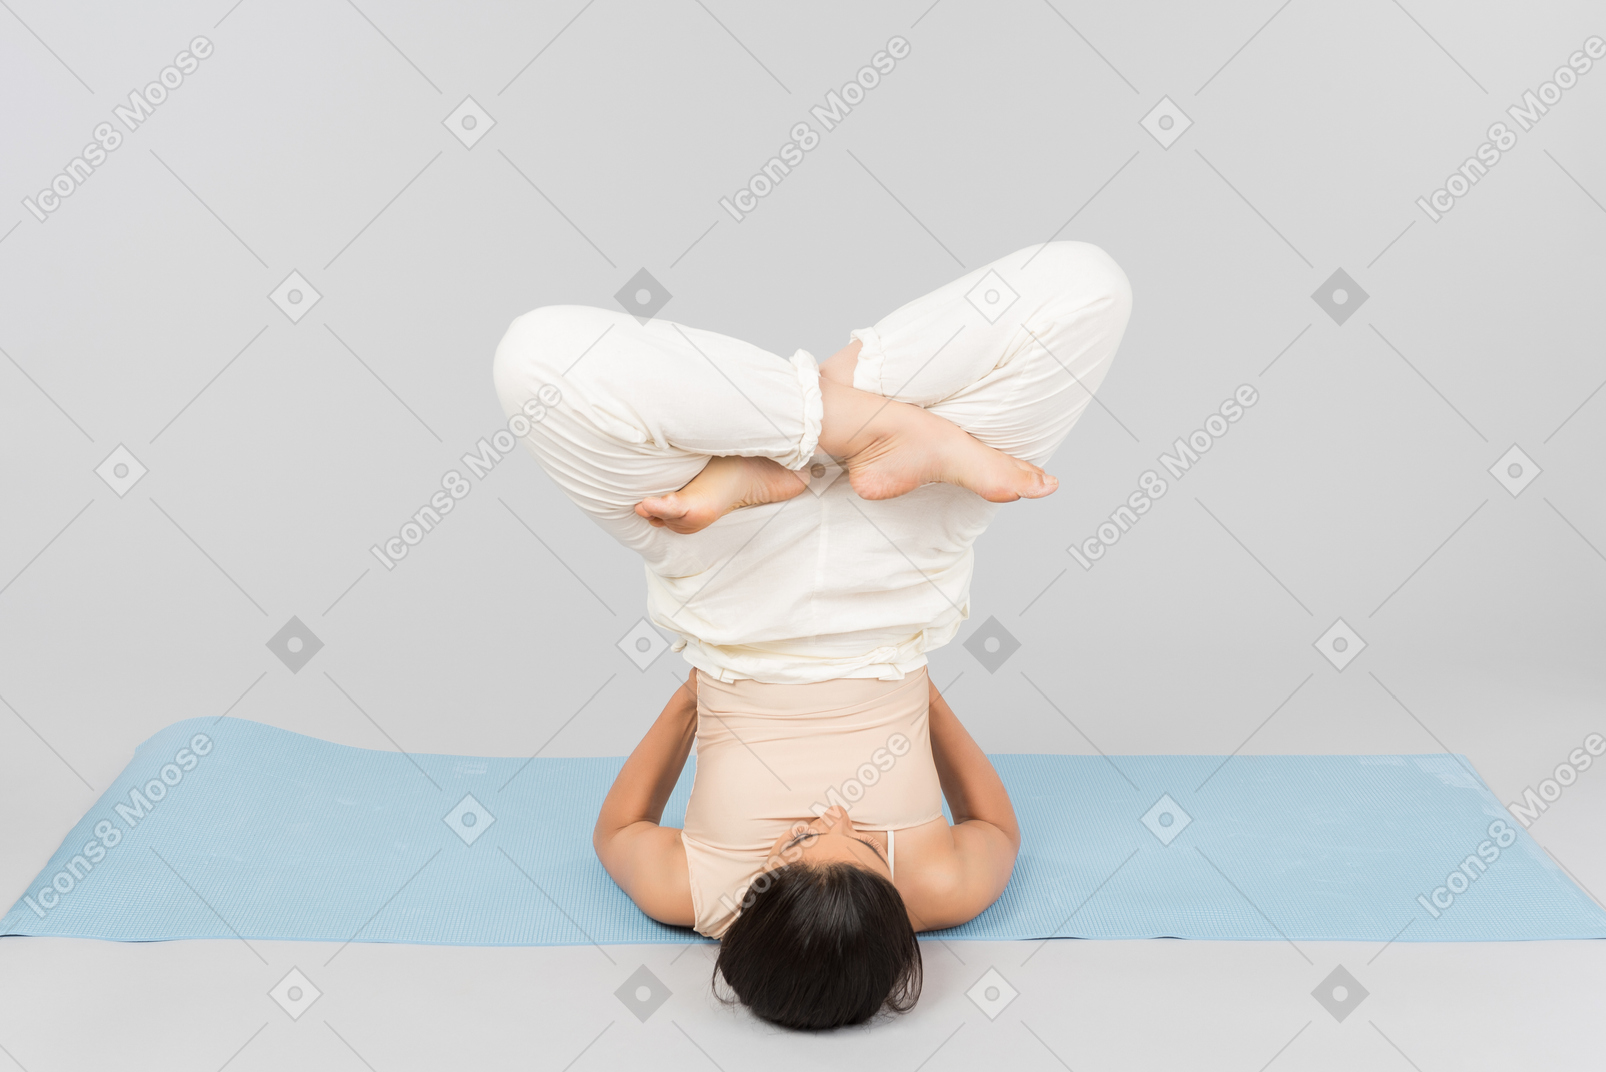 Junge indische frau, die auf kopf auf yogamatte liegt